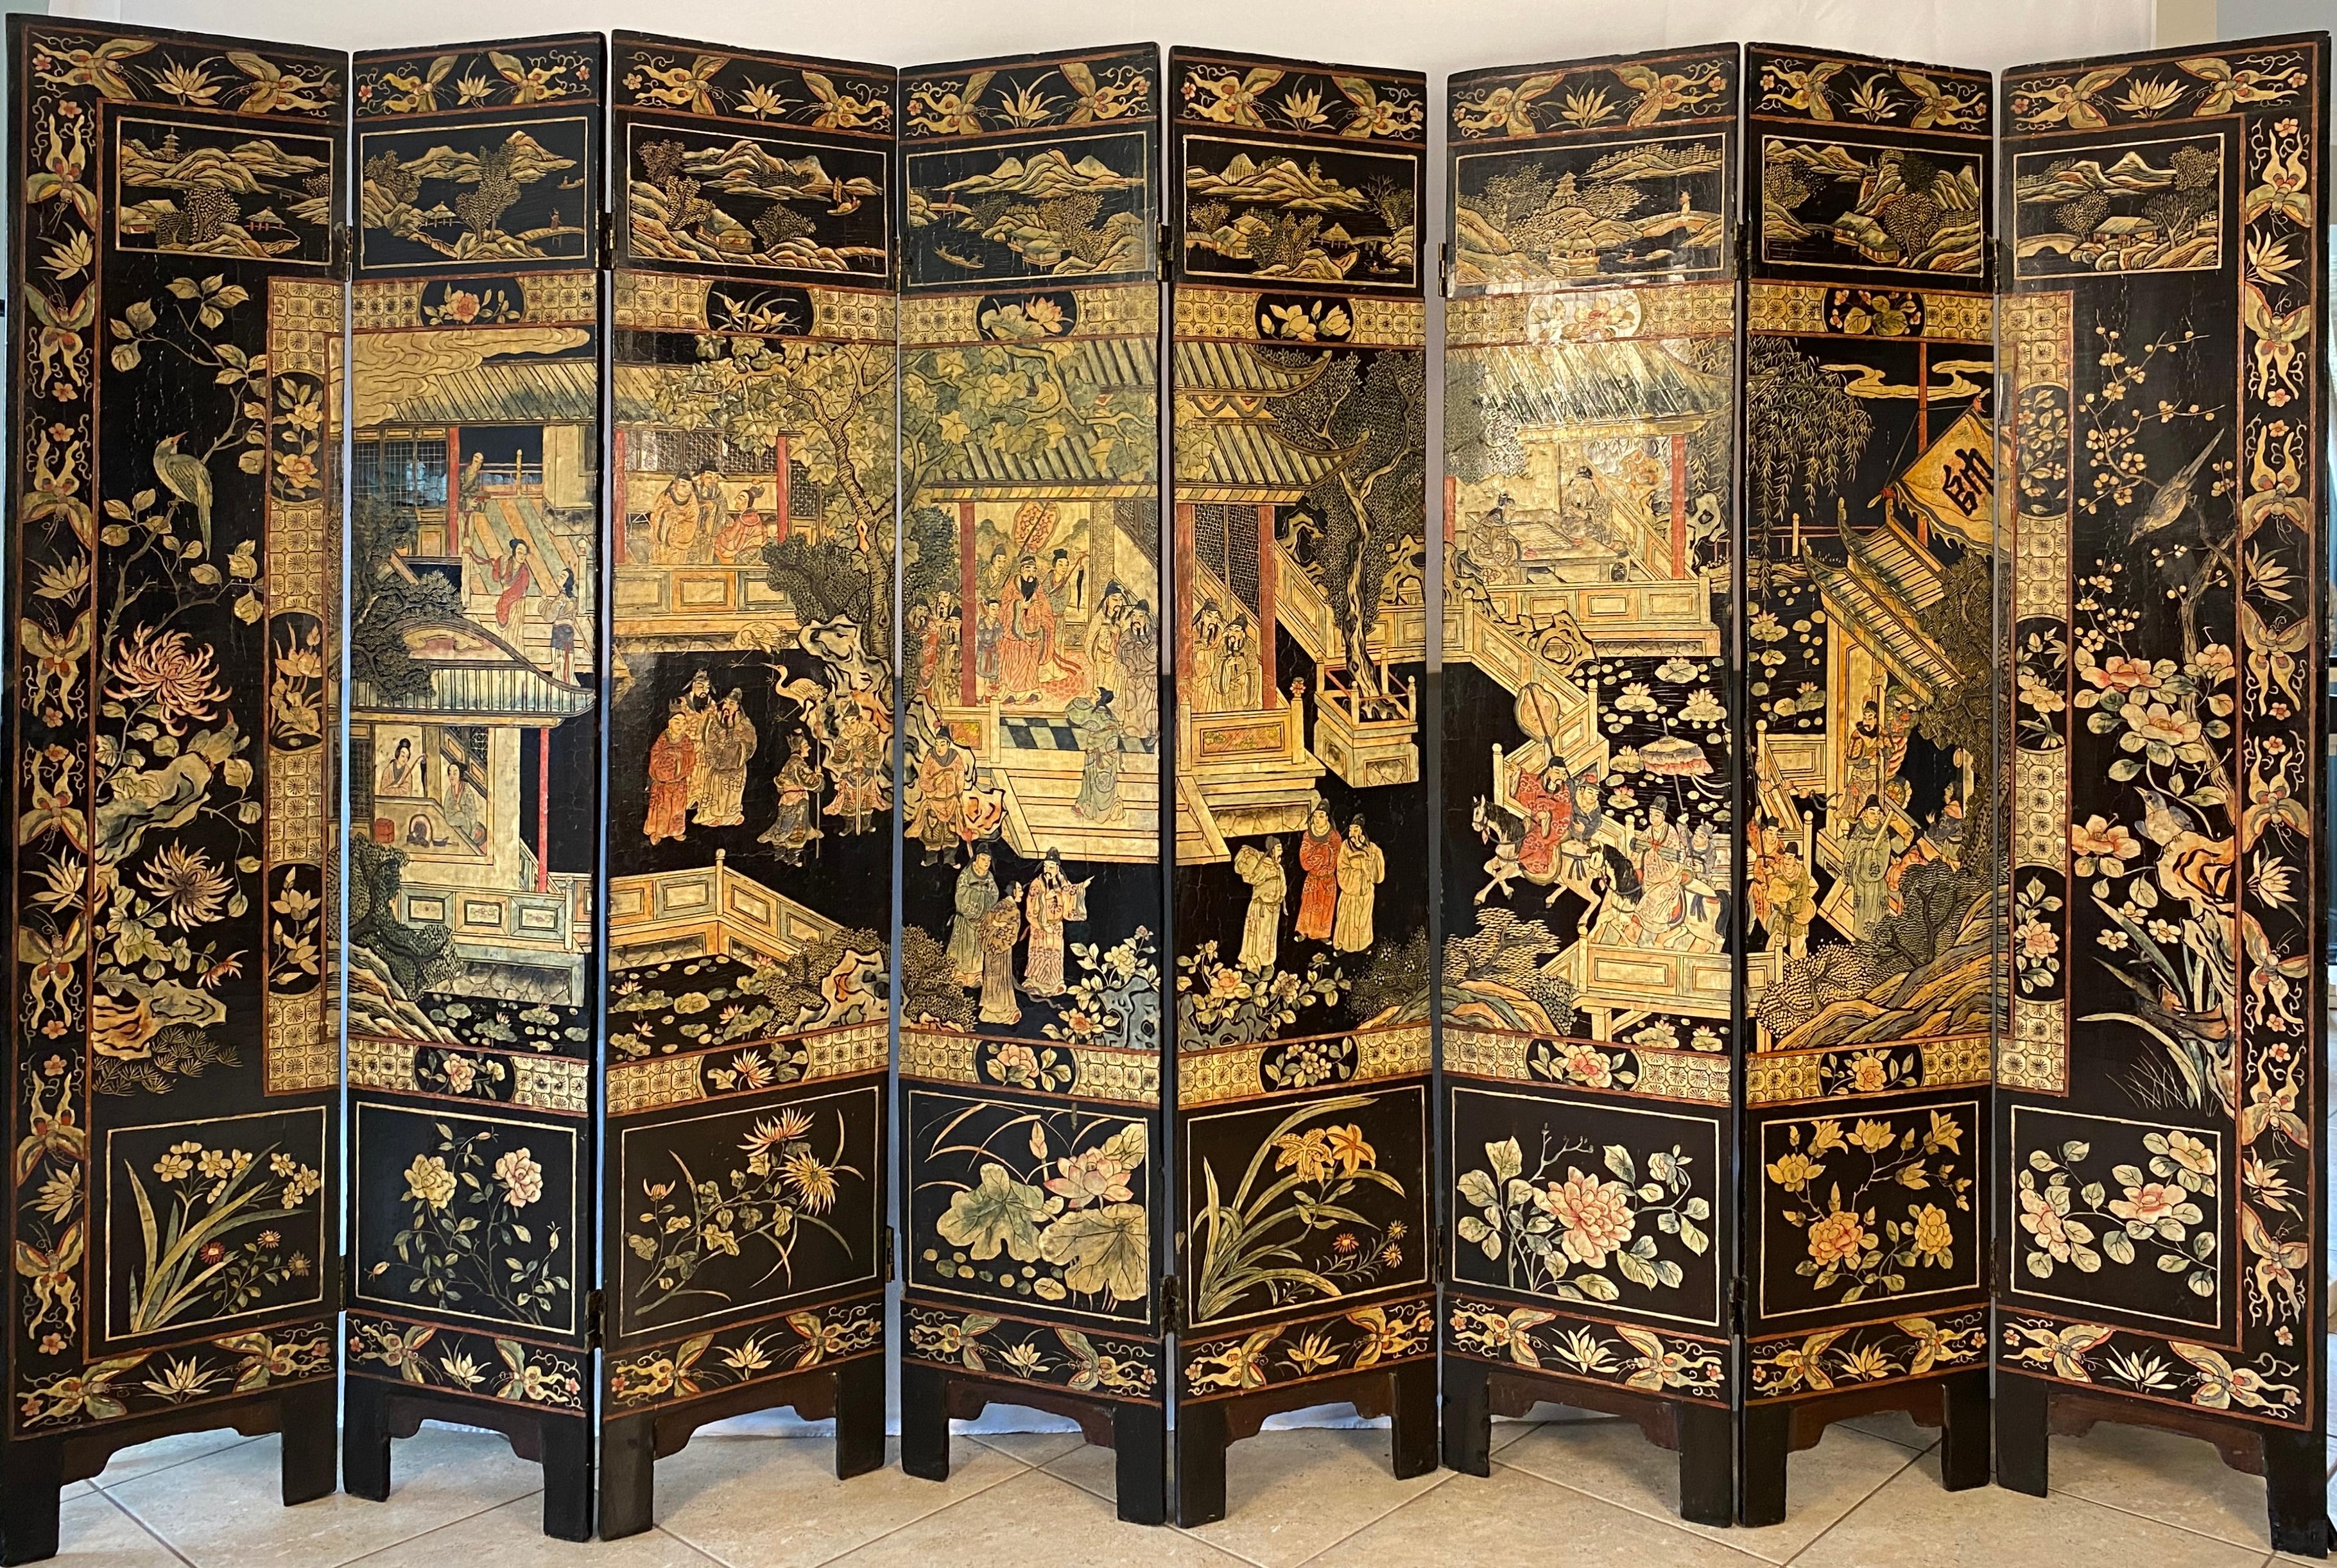 Mit diesem fesselnden achtteiligen Coromandel-Bildschirm, einem seltenen und exquisiten Beispiel für die chinesische Handwerkskunst des frühen 19. Jahrhunderts, machen Sie eine Reise in die Vergangenheit.  Die beidseitig verzierten Tafeln entfalten